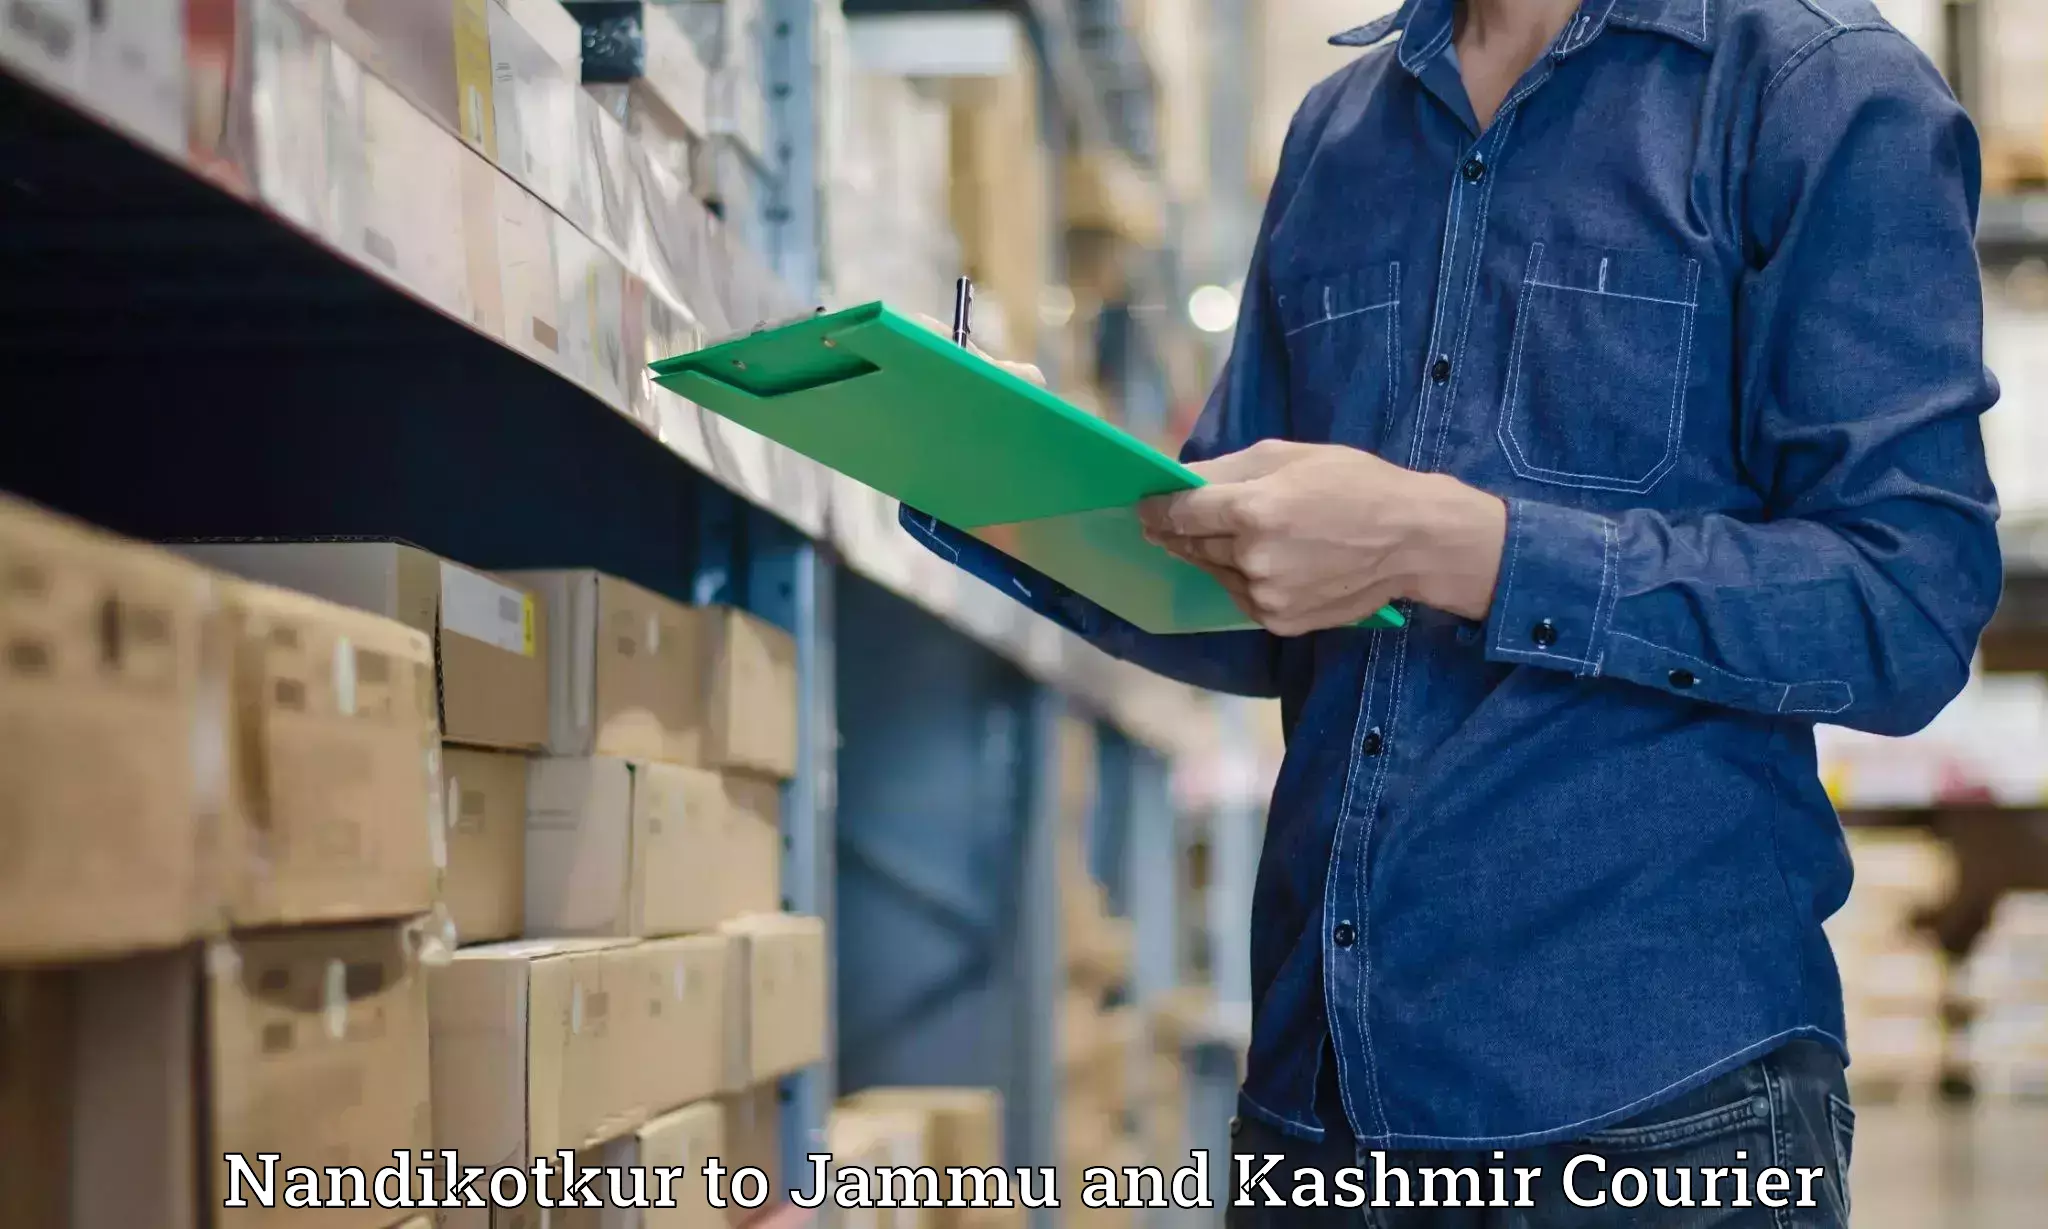 Medical delivery services Nandikotkur to Jammu and Kashmir